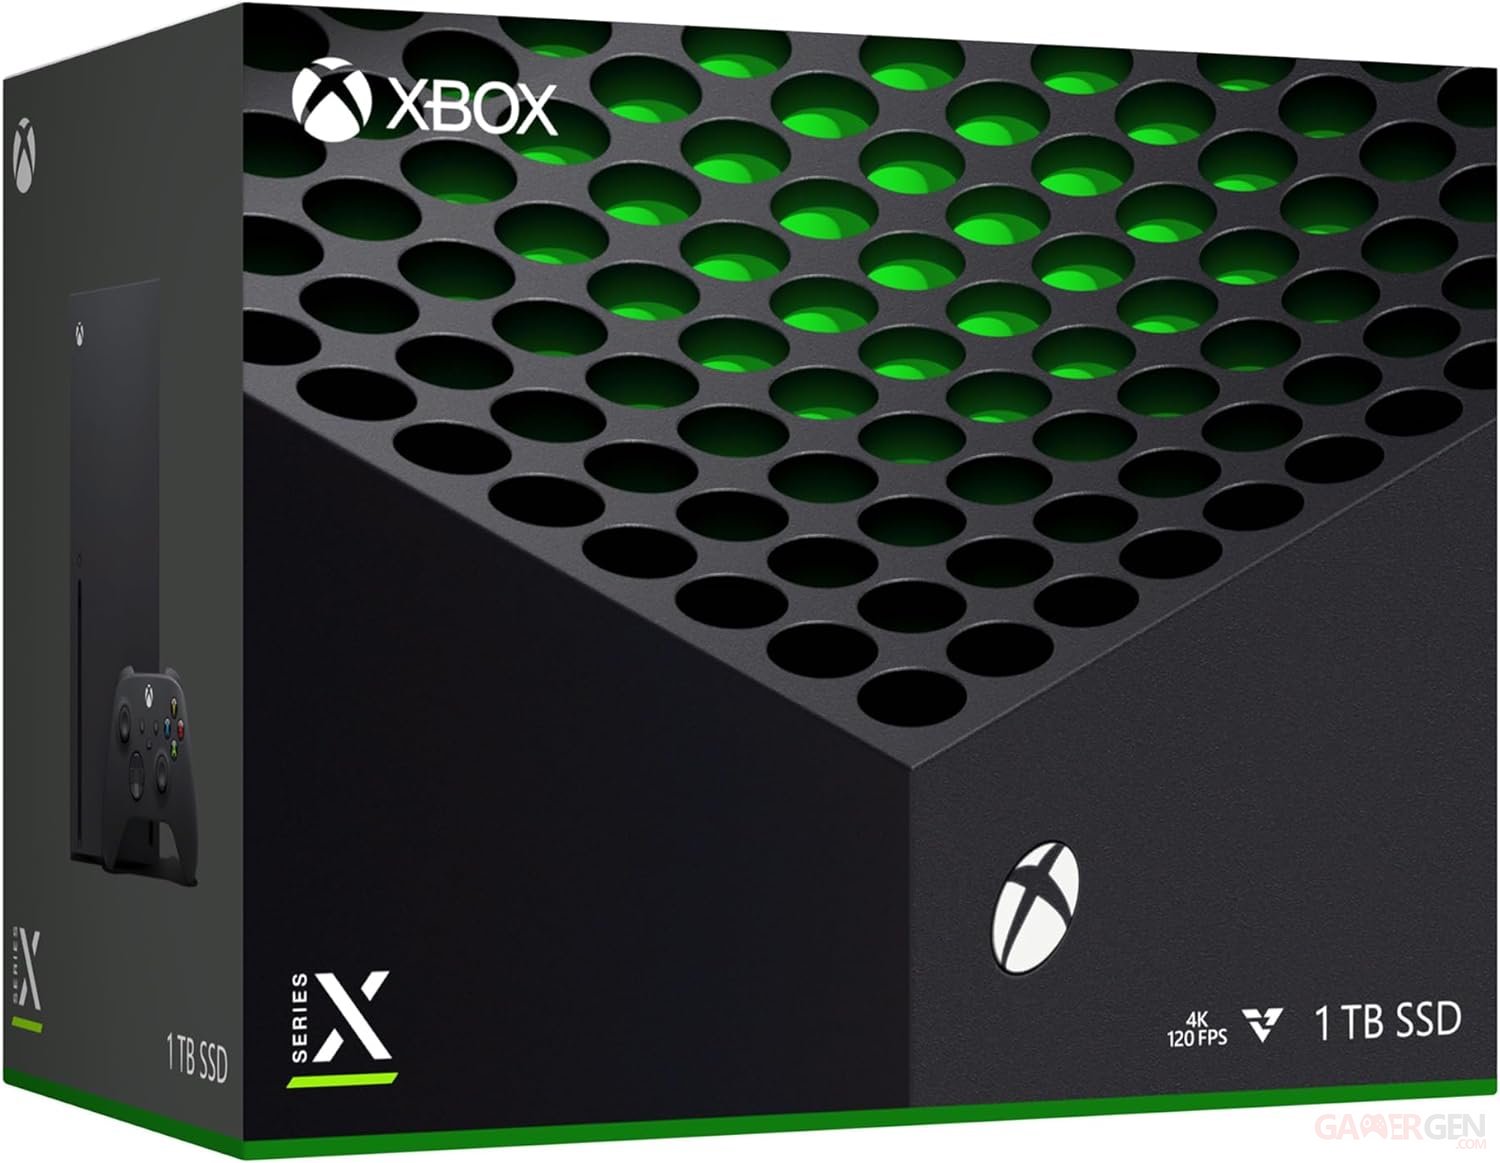 BON PLAN : les manettes Xbox Series X et S à prix réduit 